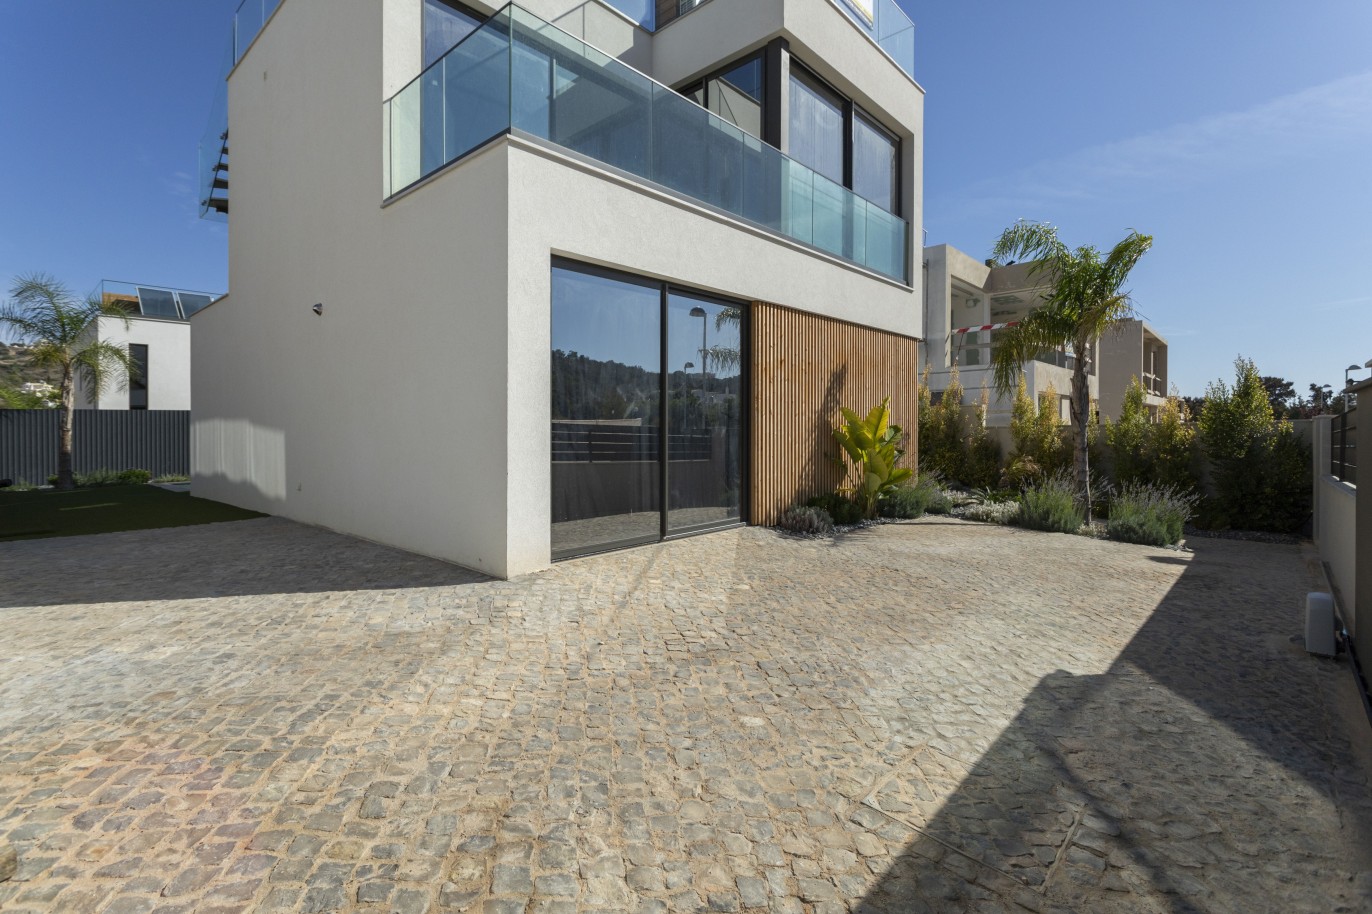 Villa de 3 dormitorios, en construcción, en venta, en Albufeira, Algarve_239019